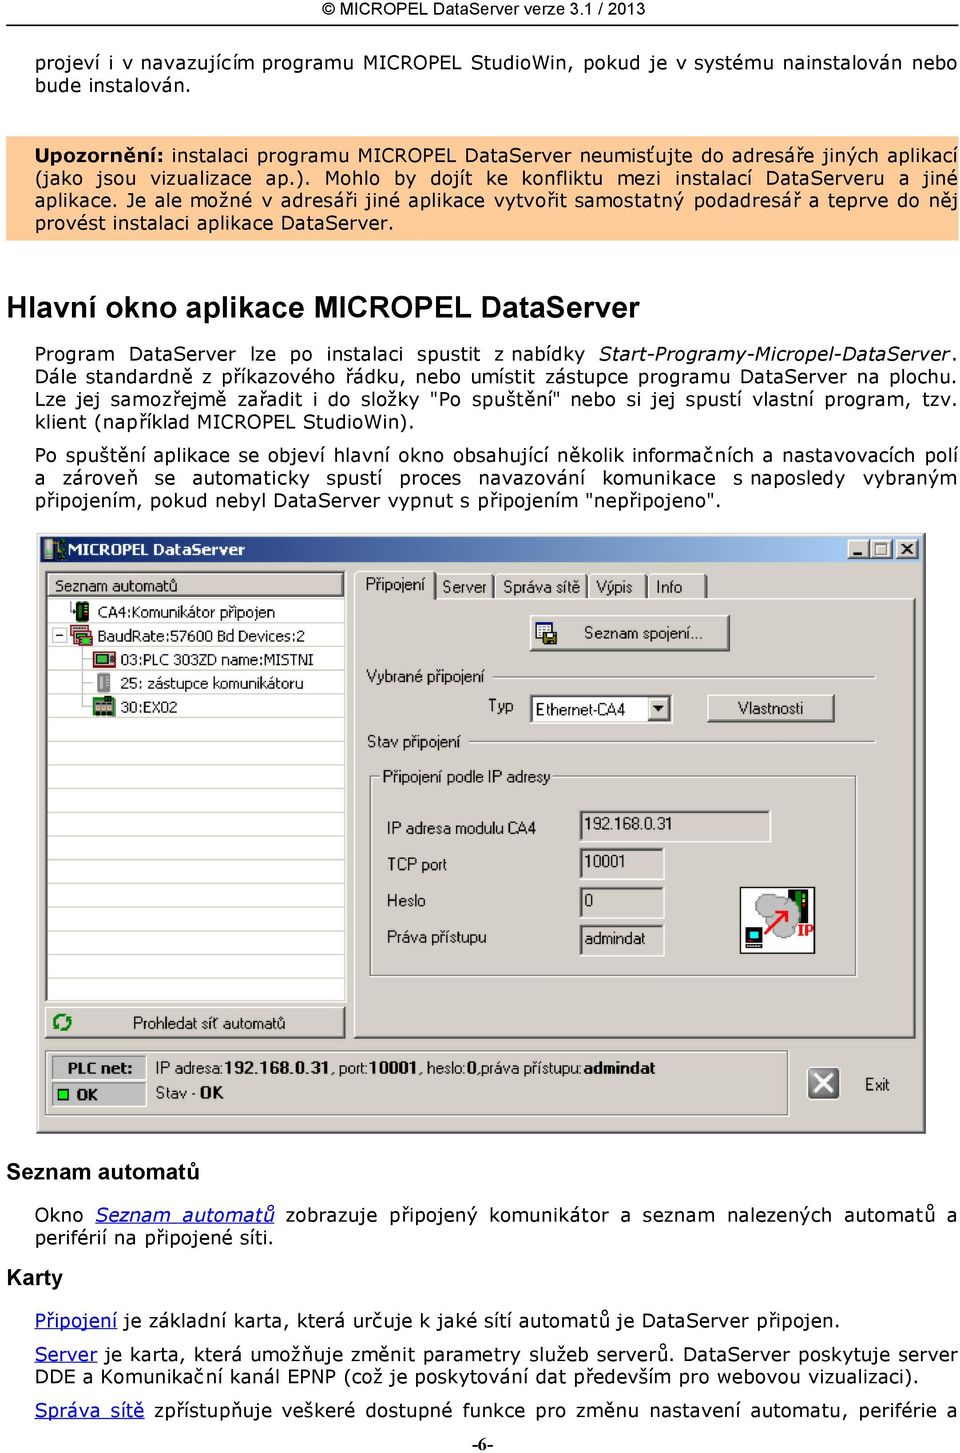 Je ale možné v adresáři jiné aplikace vytvořit samostatný podadresář a teprve do něj provést instalaci aplikace DataServer.